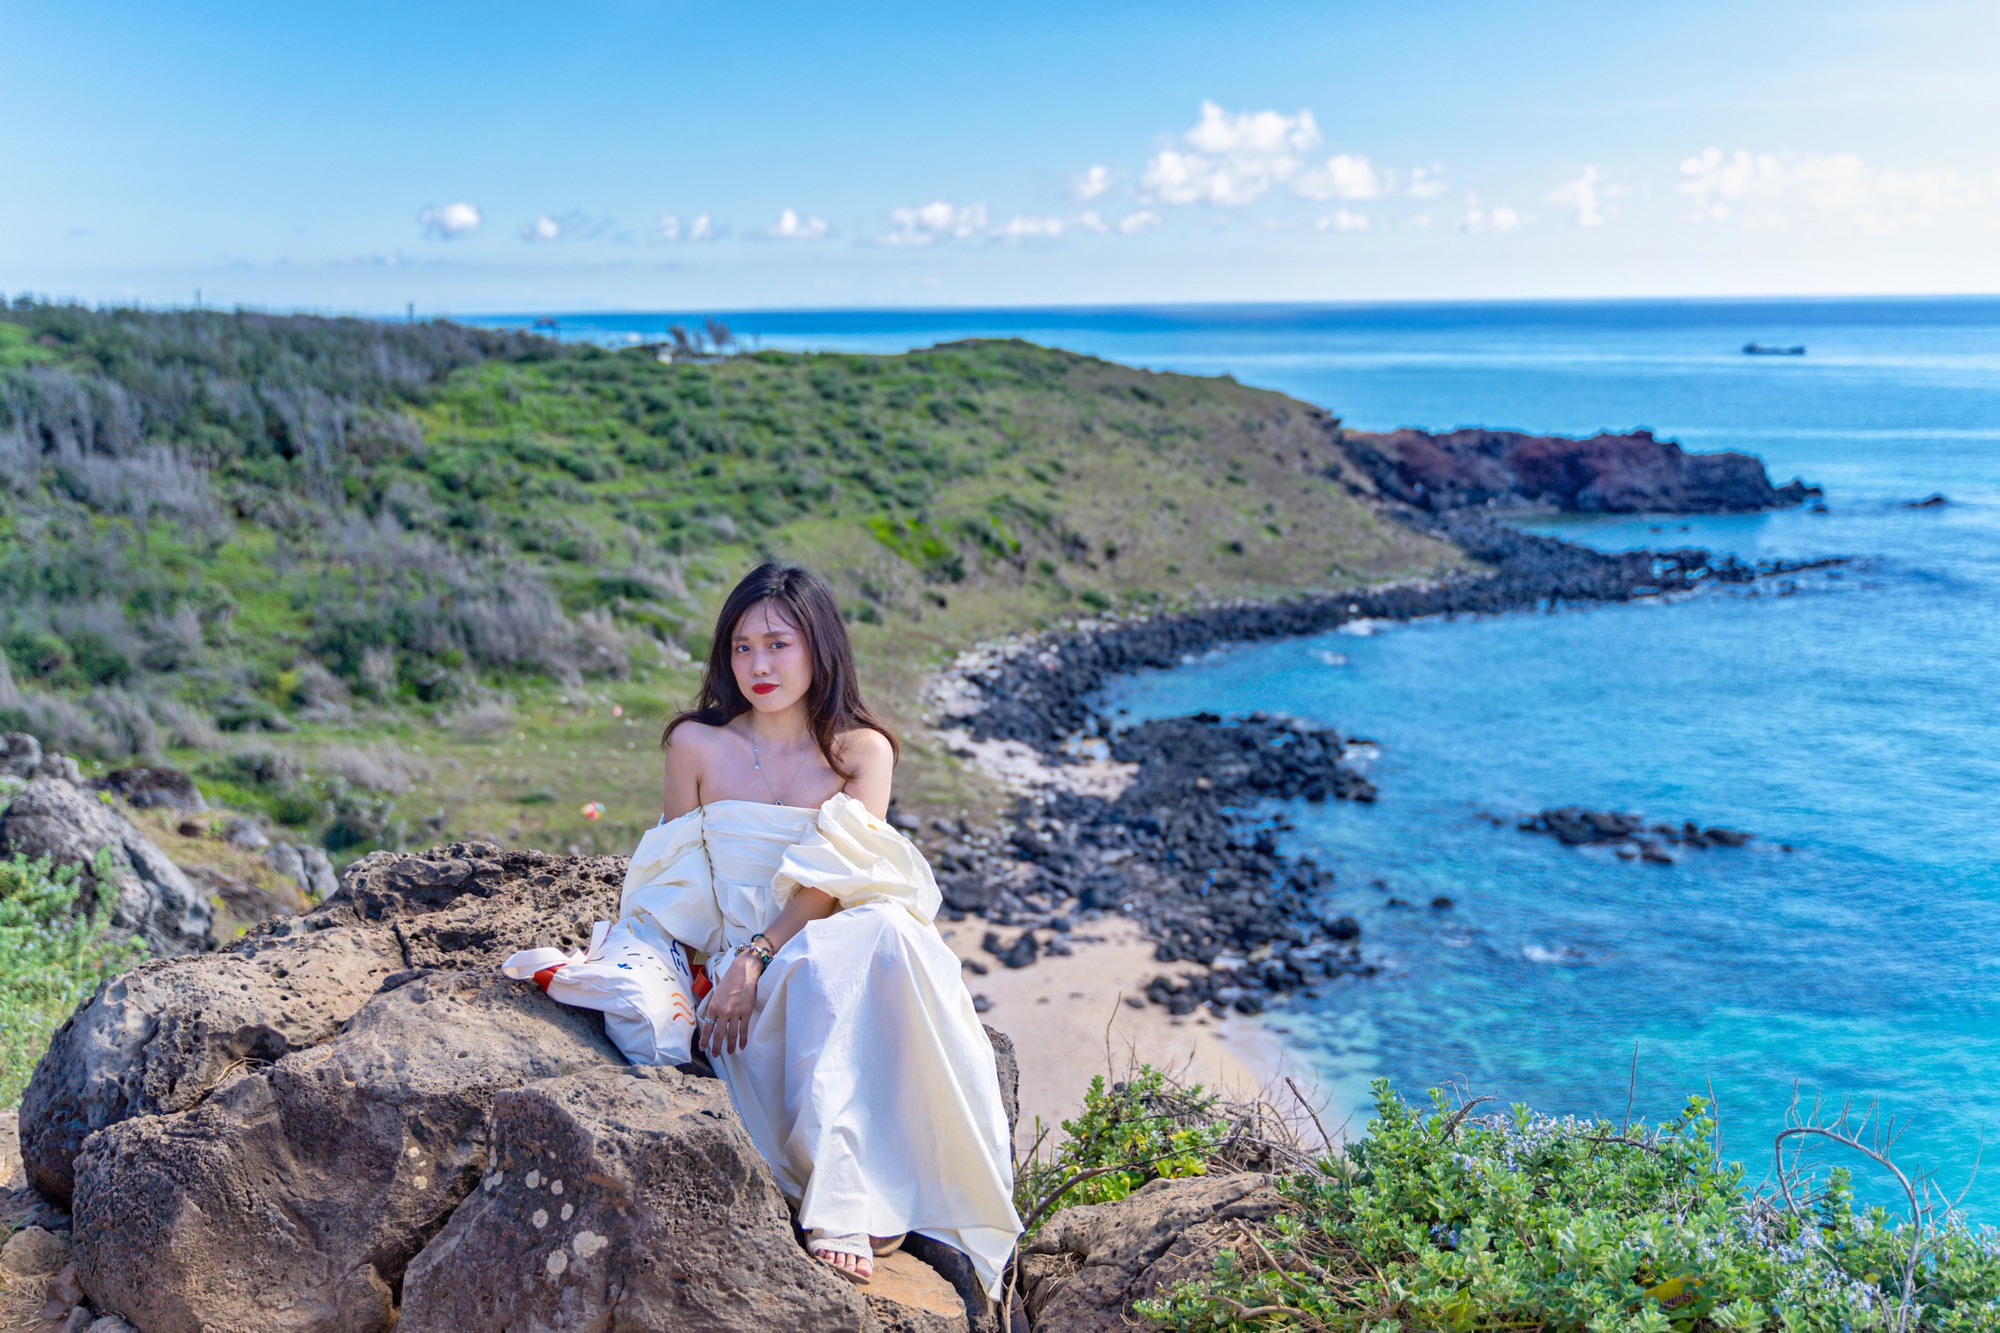 Đi du lịch đảo Phú Quý chỉ hơn 2 triệu/người mà có cả trăm ảnh check-in siêu đẹp và đây là lịch trình để chị em tham khảo- Ảnh 6.